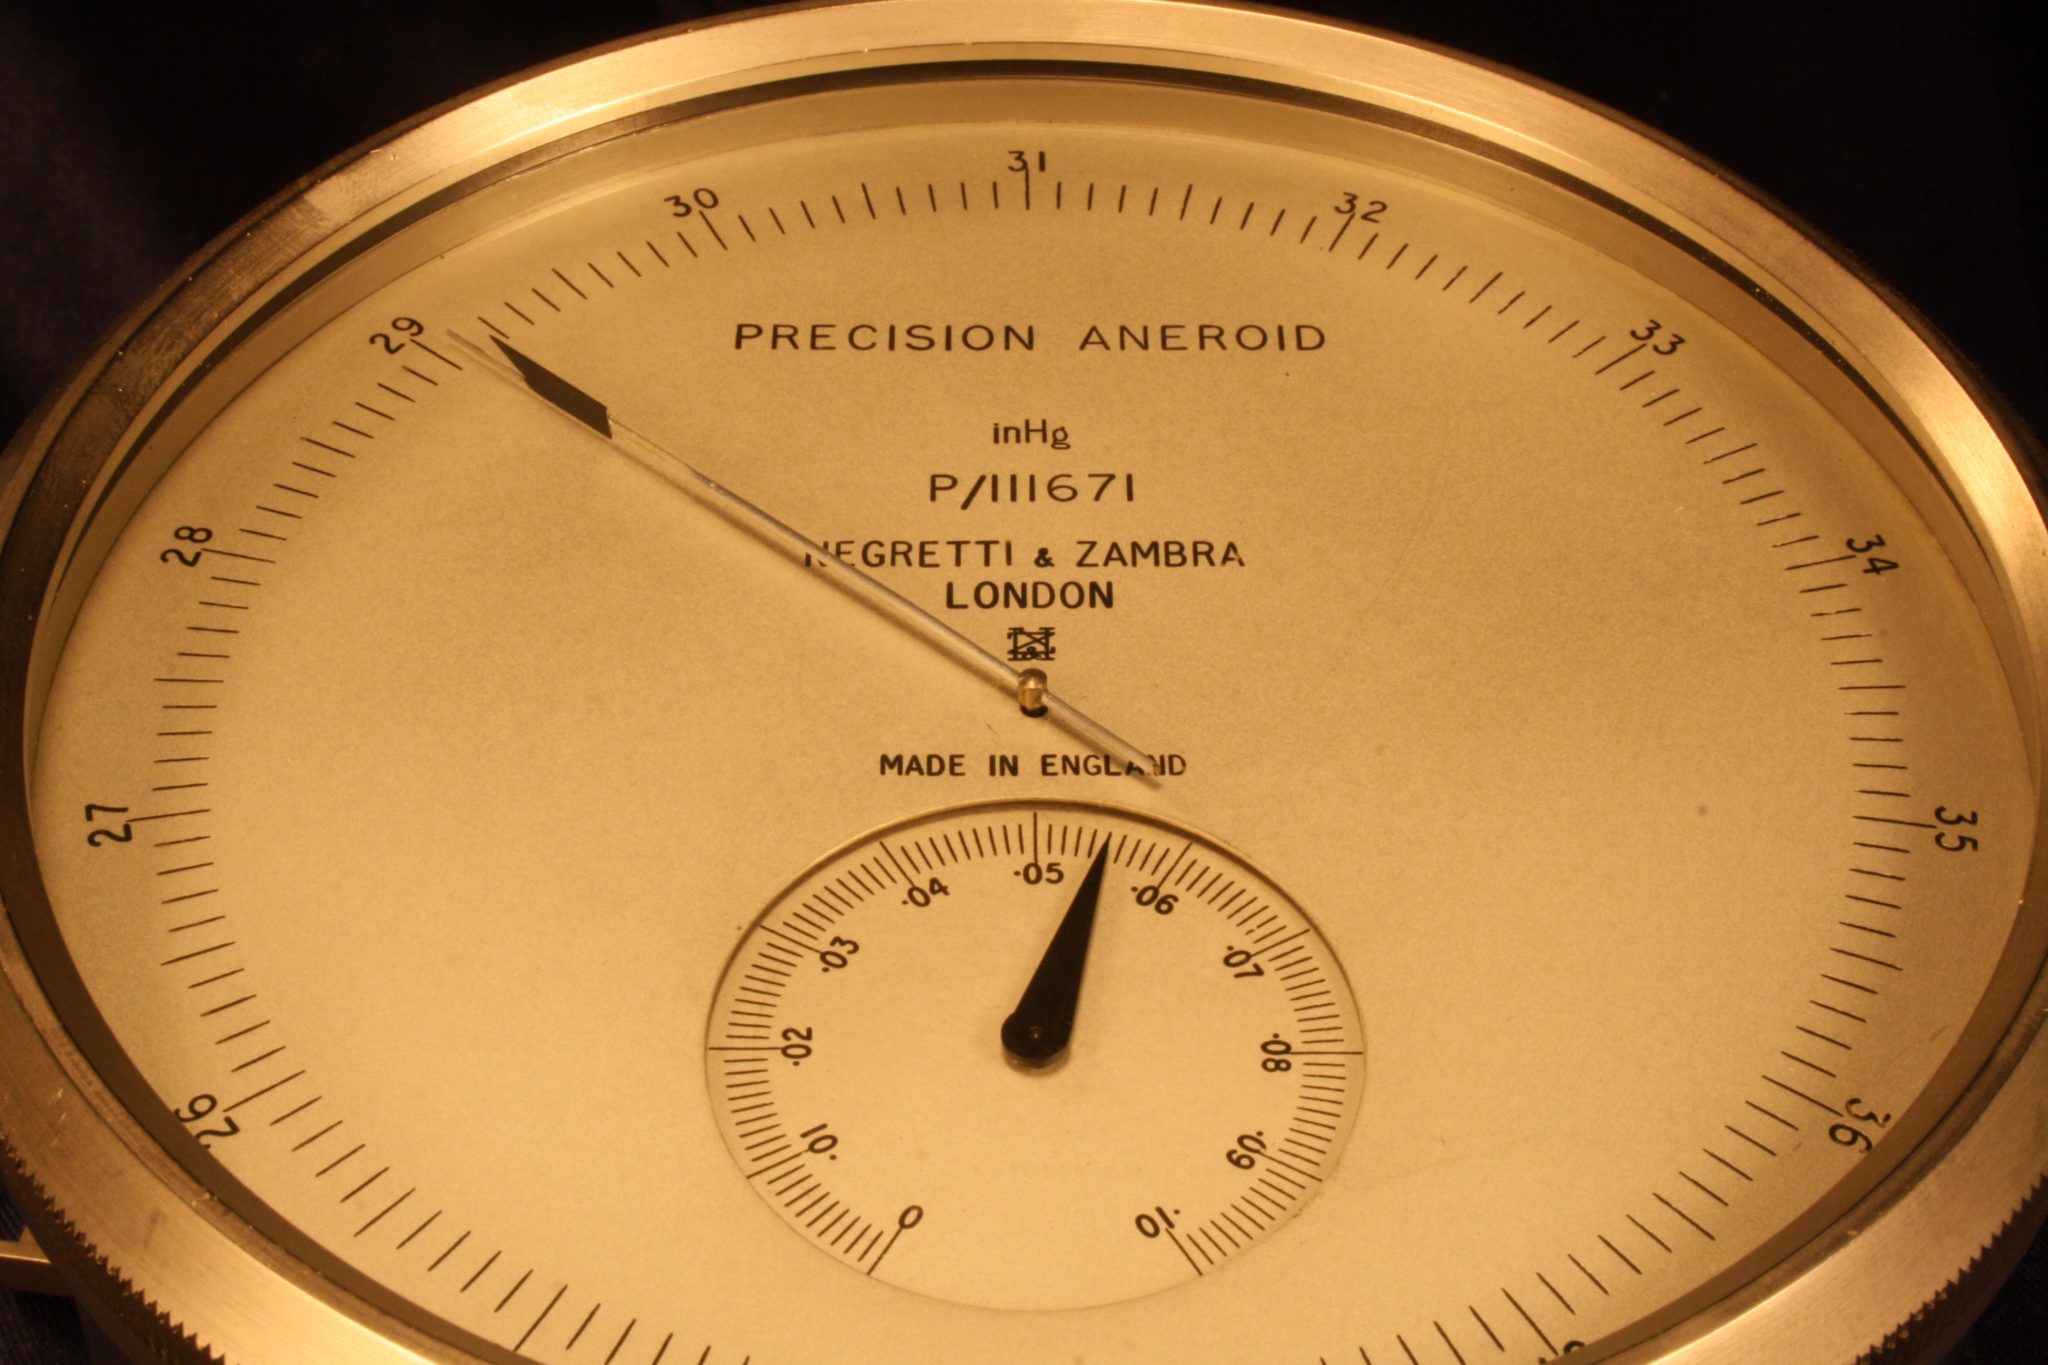 Negretti & Zambra Precision Aneroid Surveying Barometer P/111671